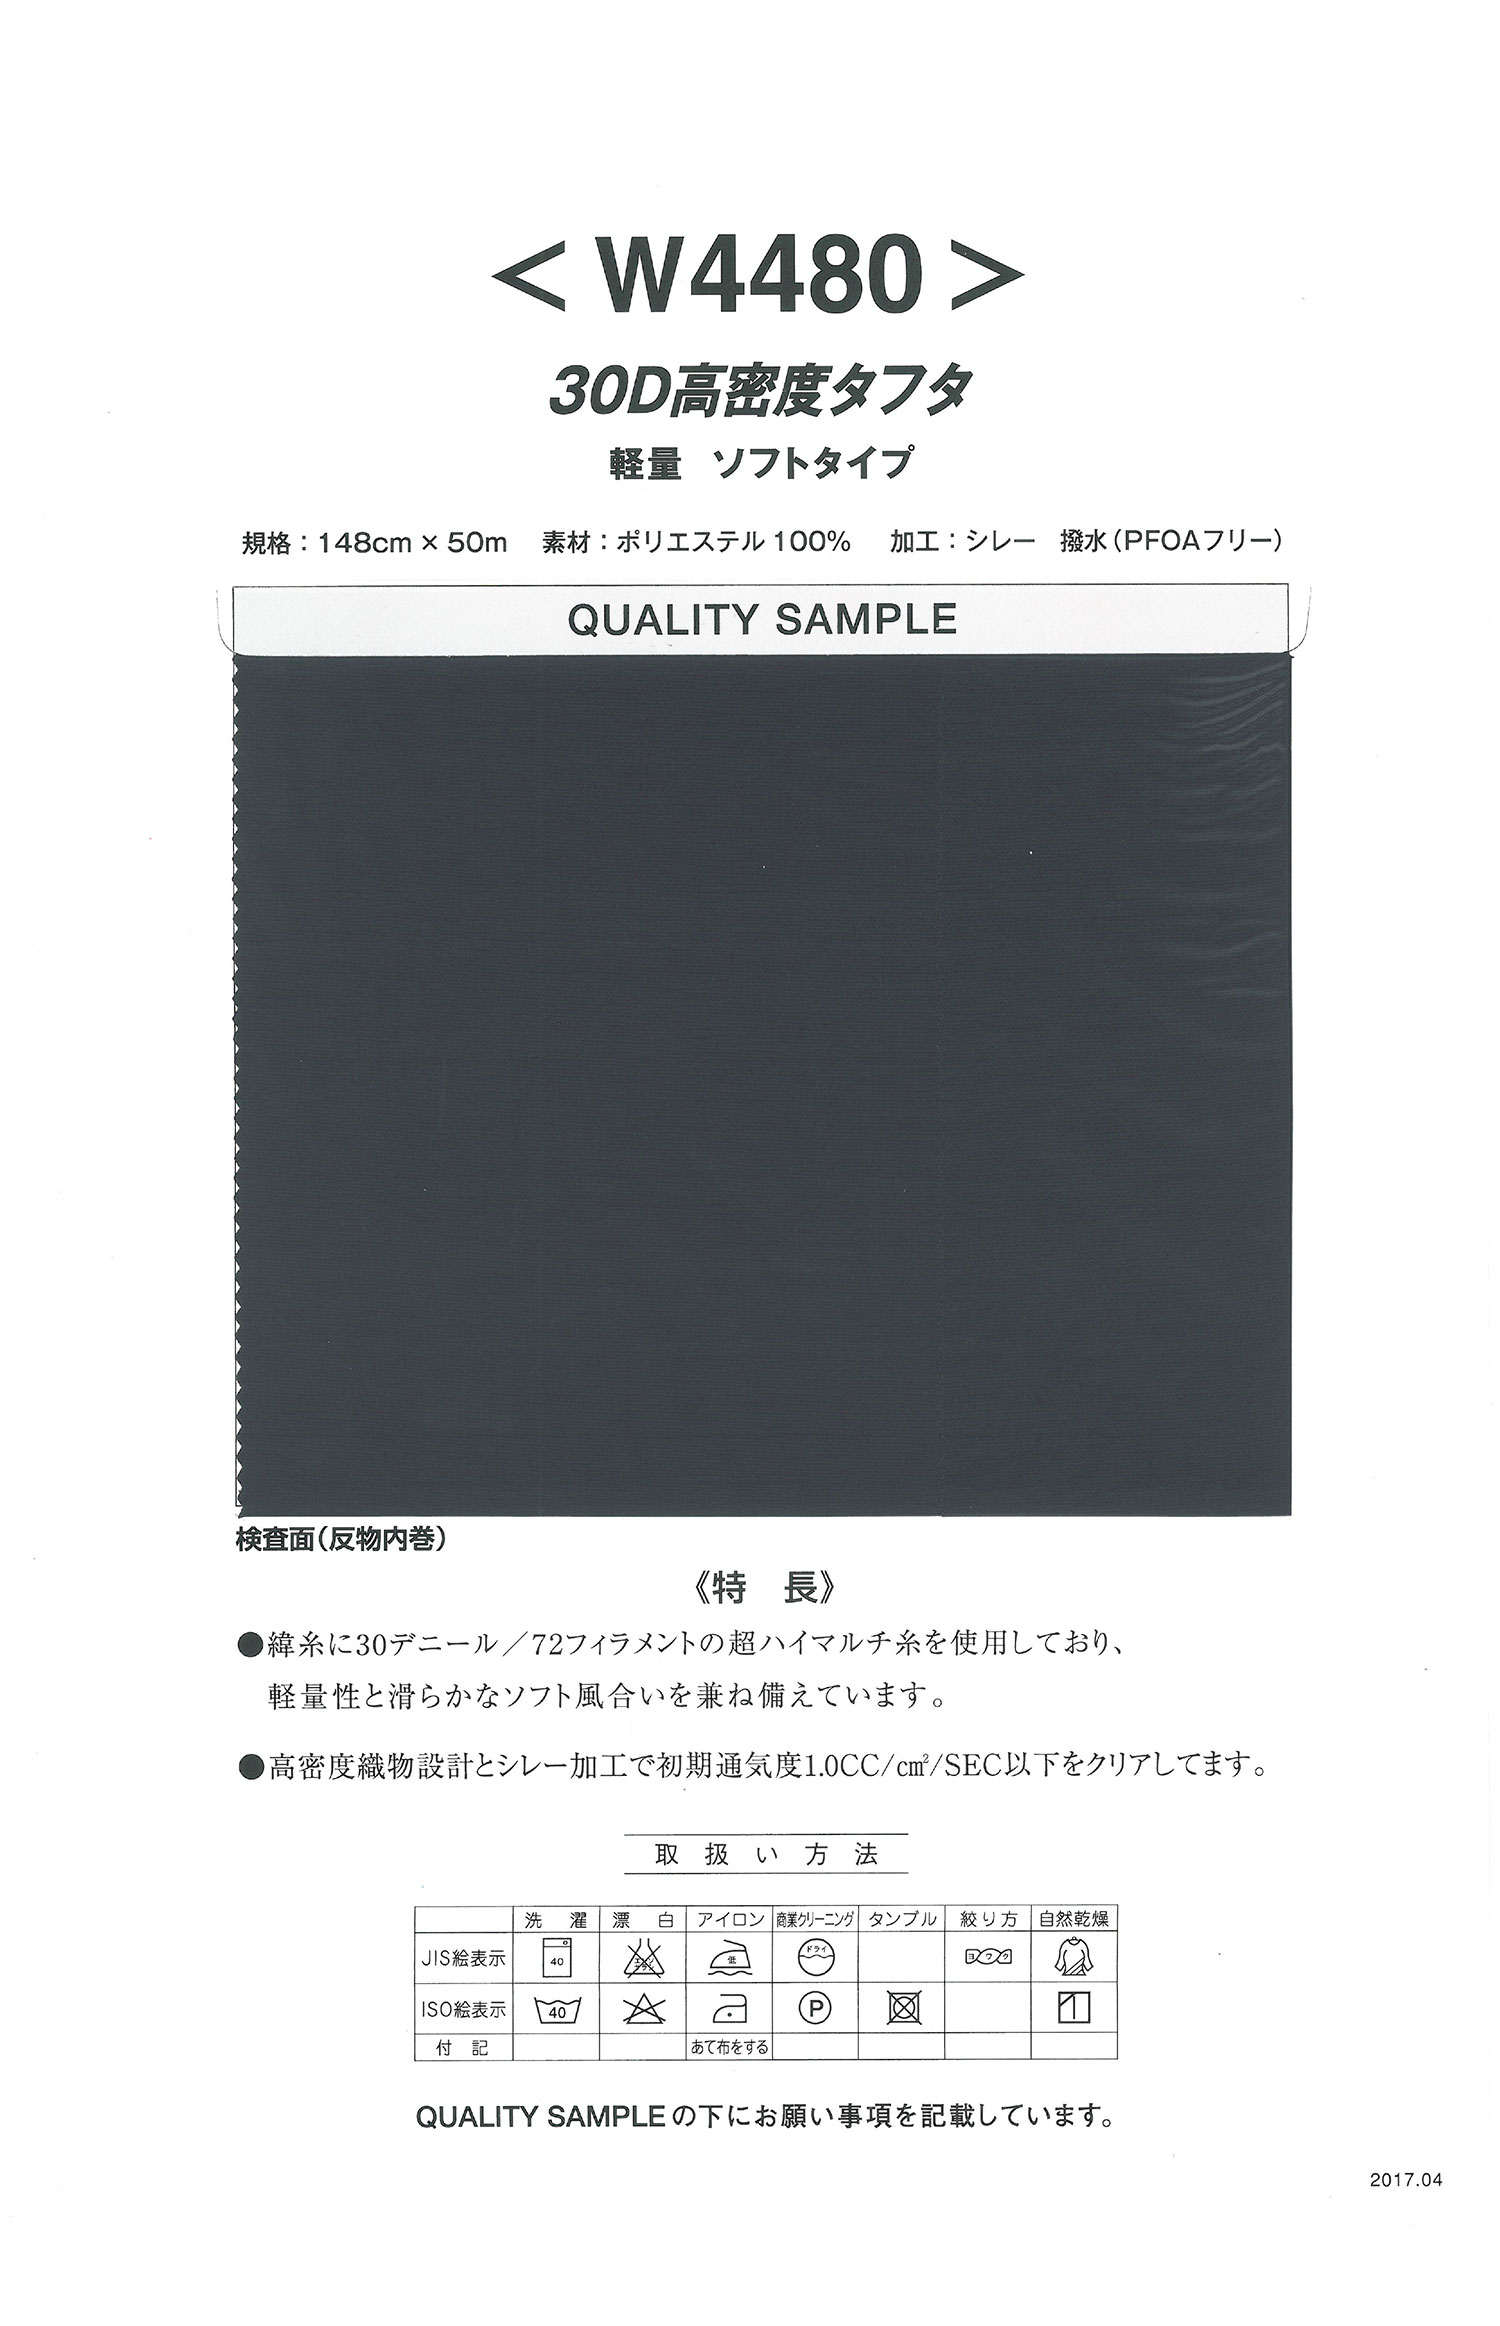 W4480 30D High Density Taft Leichte Weiche Ausführung[Textilgewebe] Nishiyama